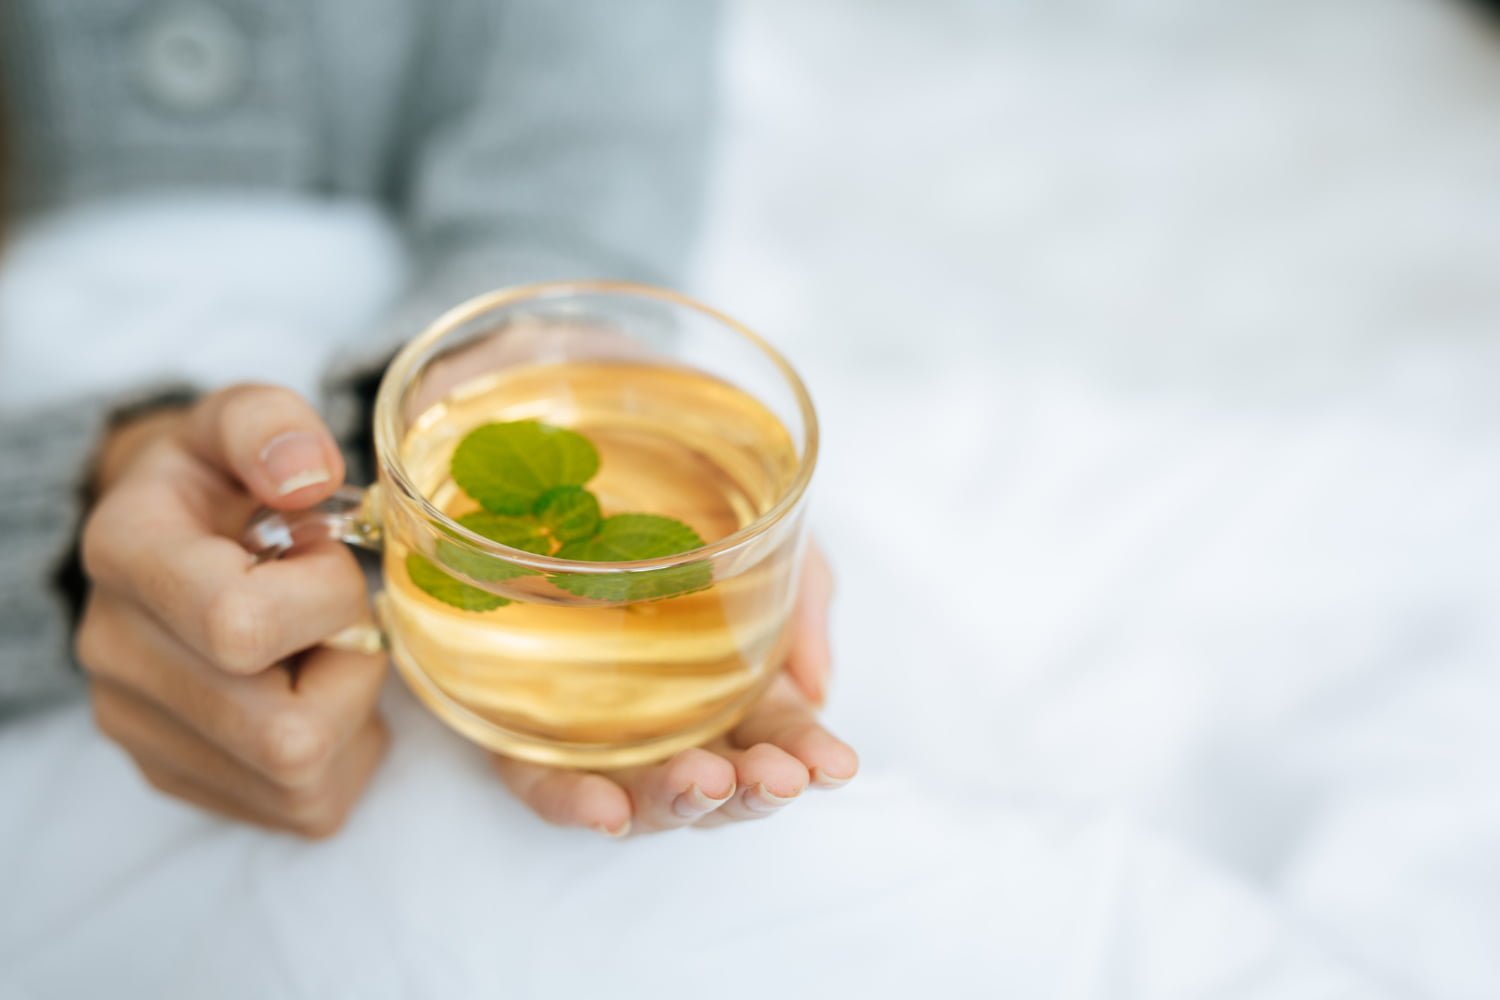 Si bebes demasiado este té de hierbas puede ser tóxico para el hígado